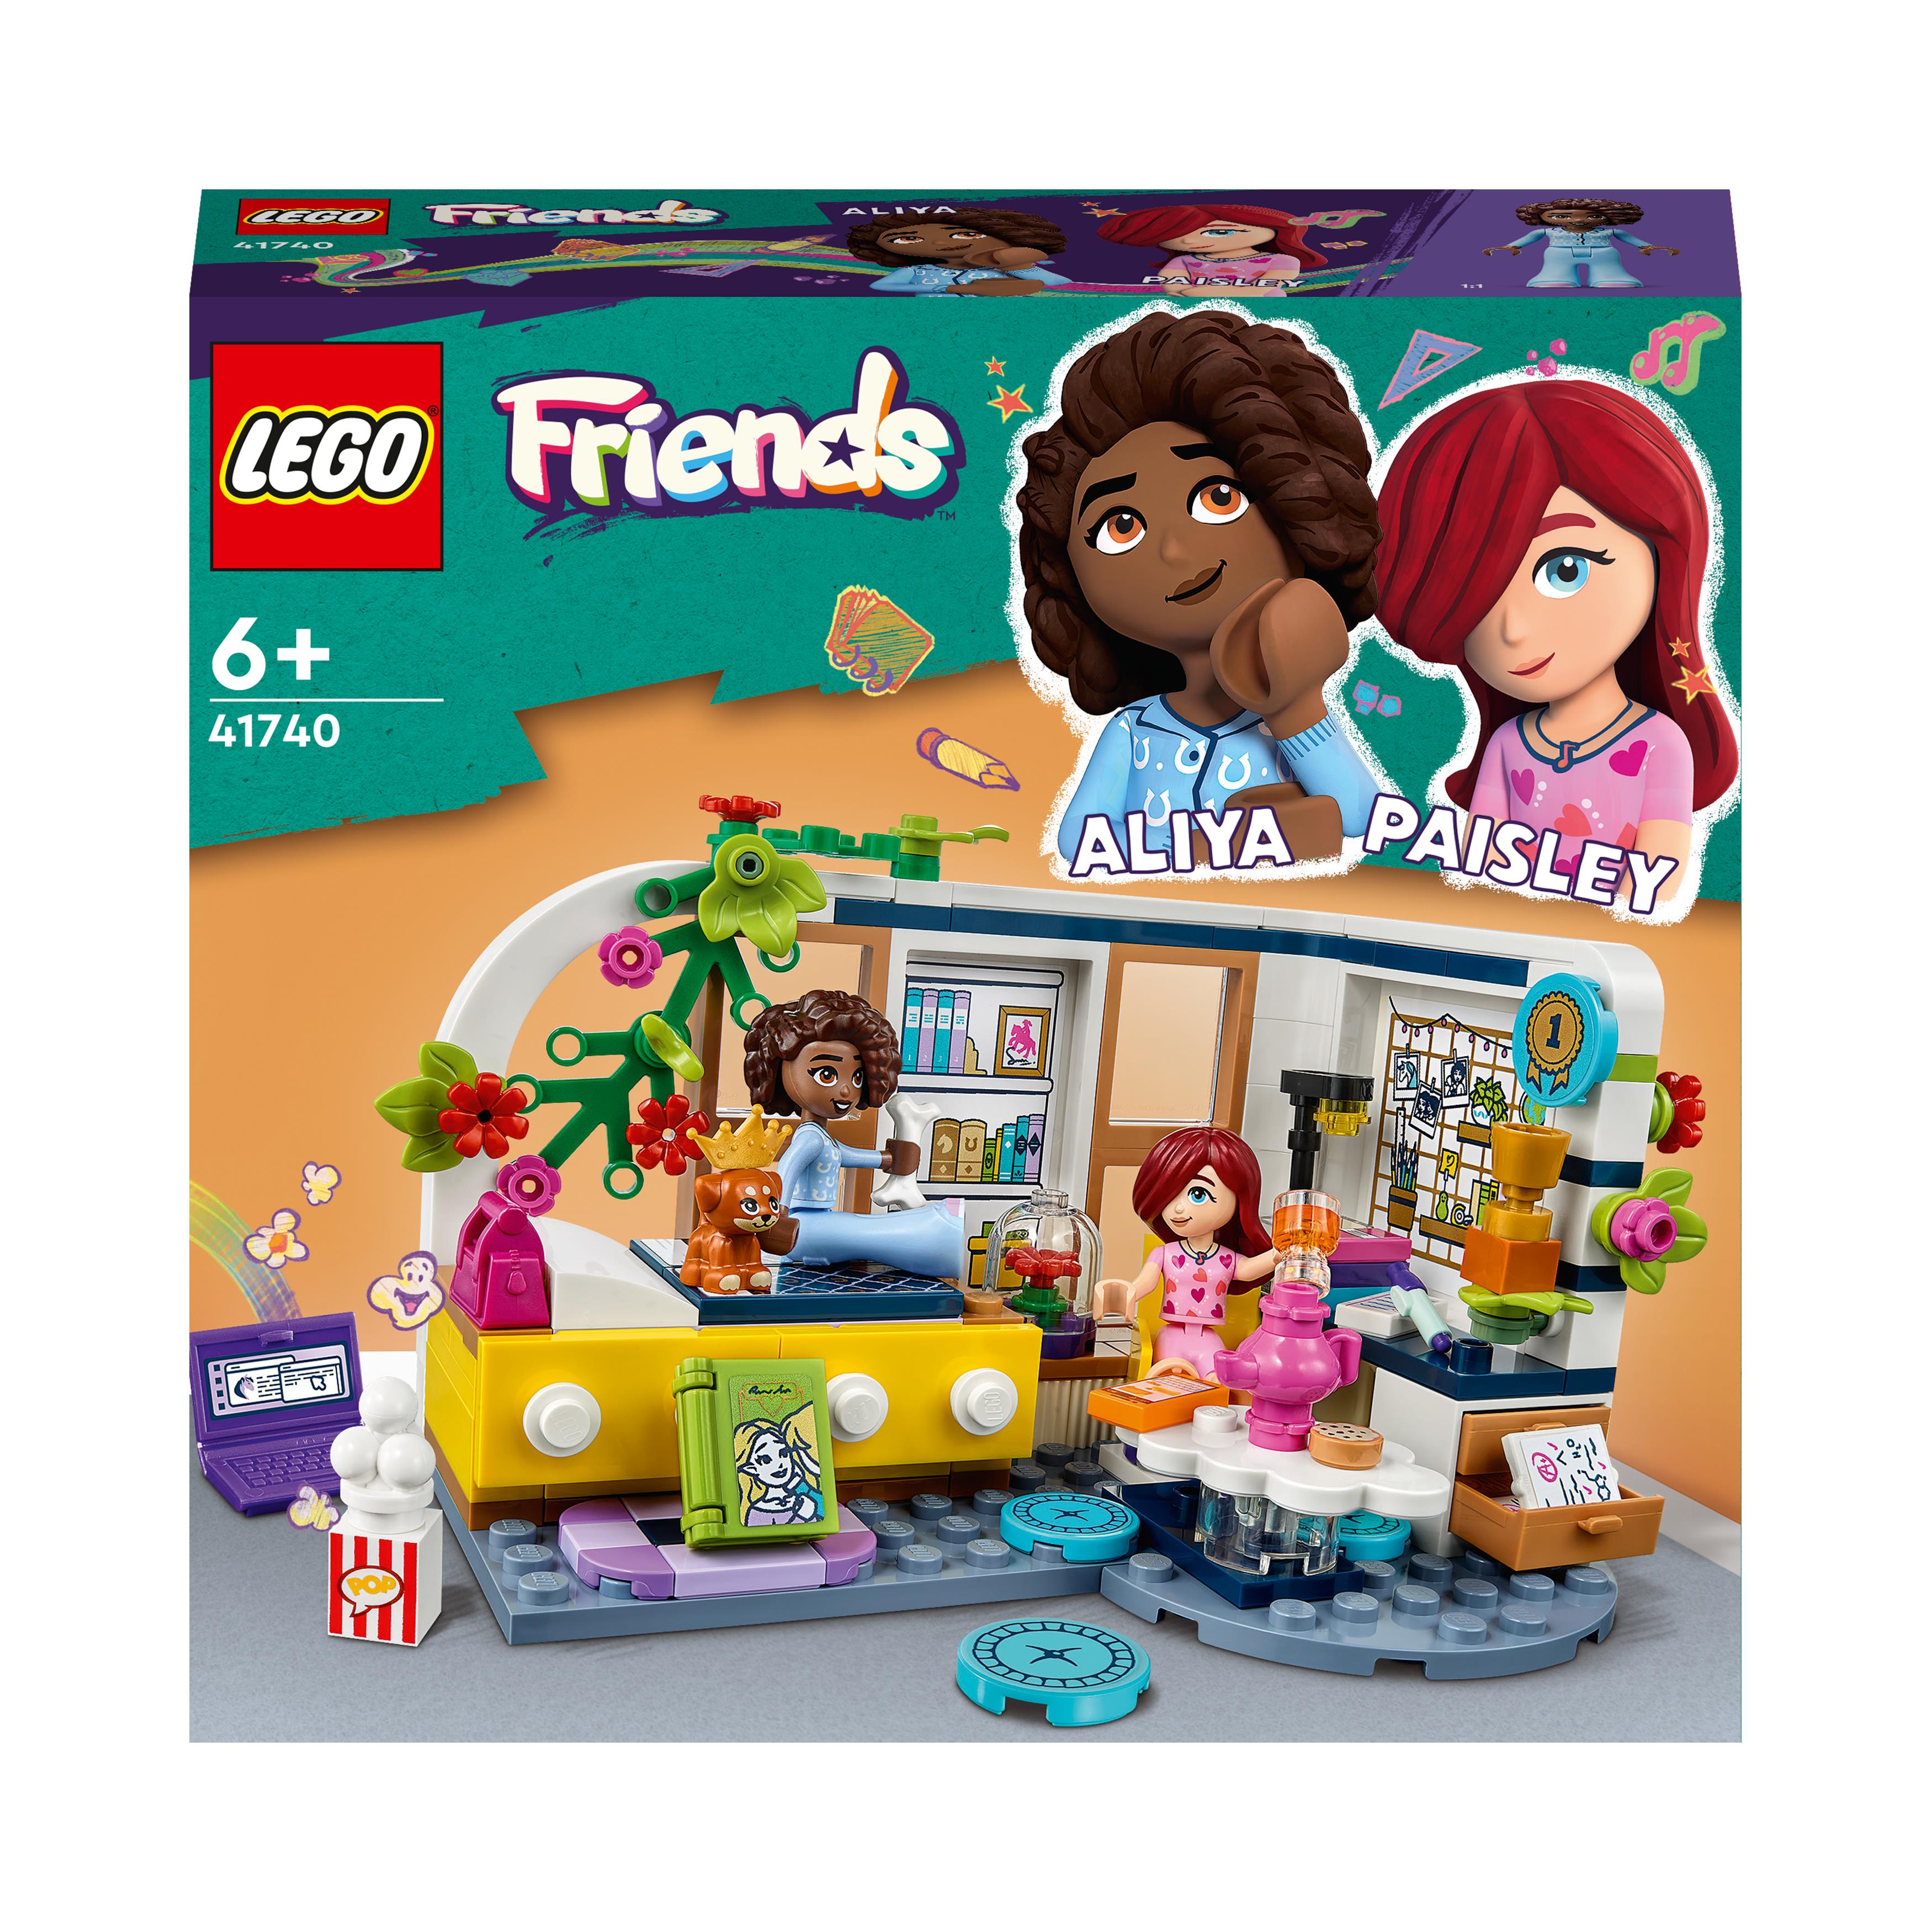 LEGO FRIENDS: i set di Costruzioni ideali per Bambine e Ragazze